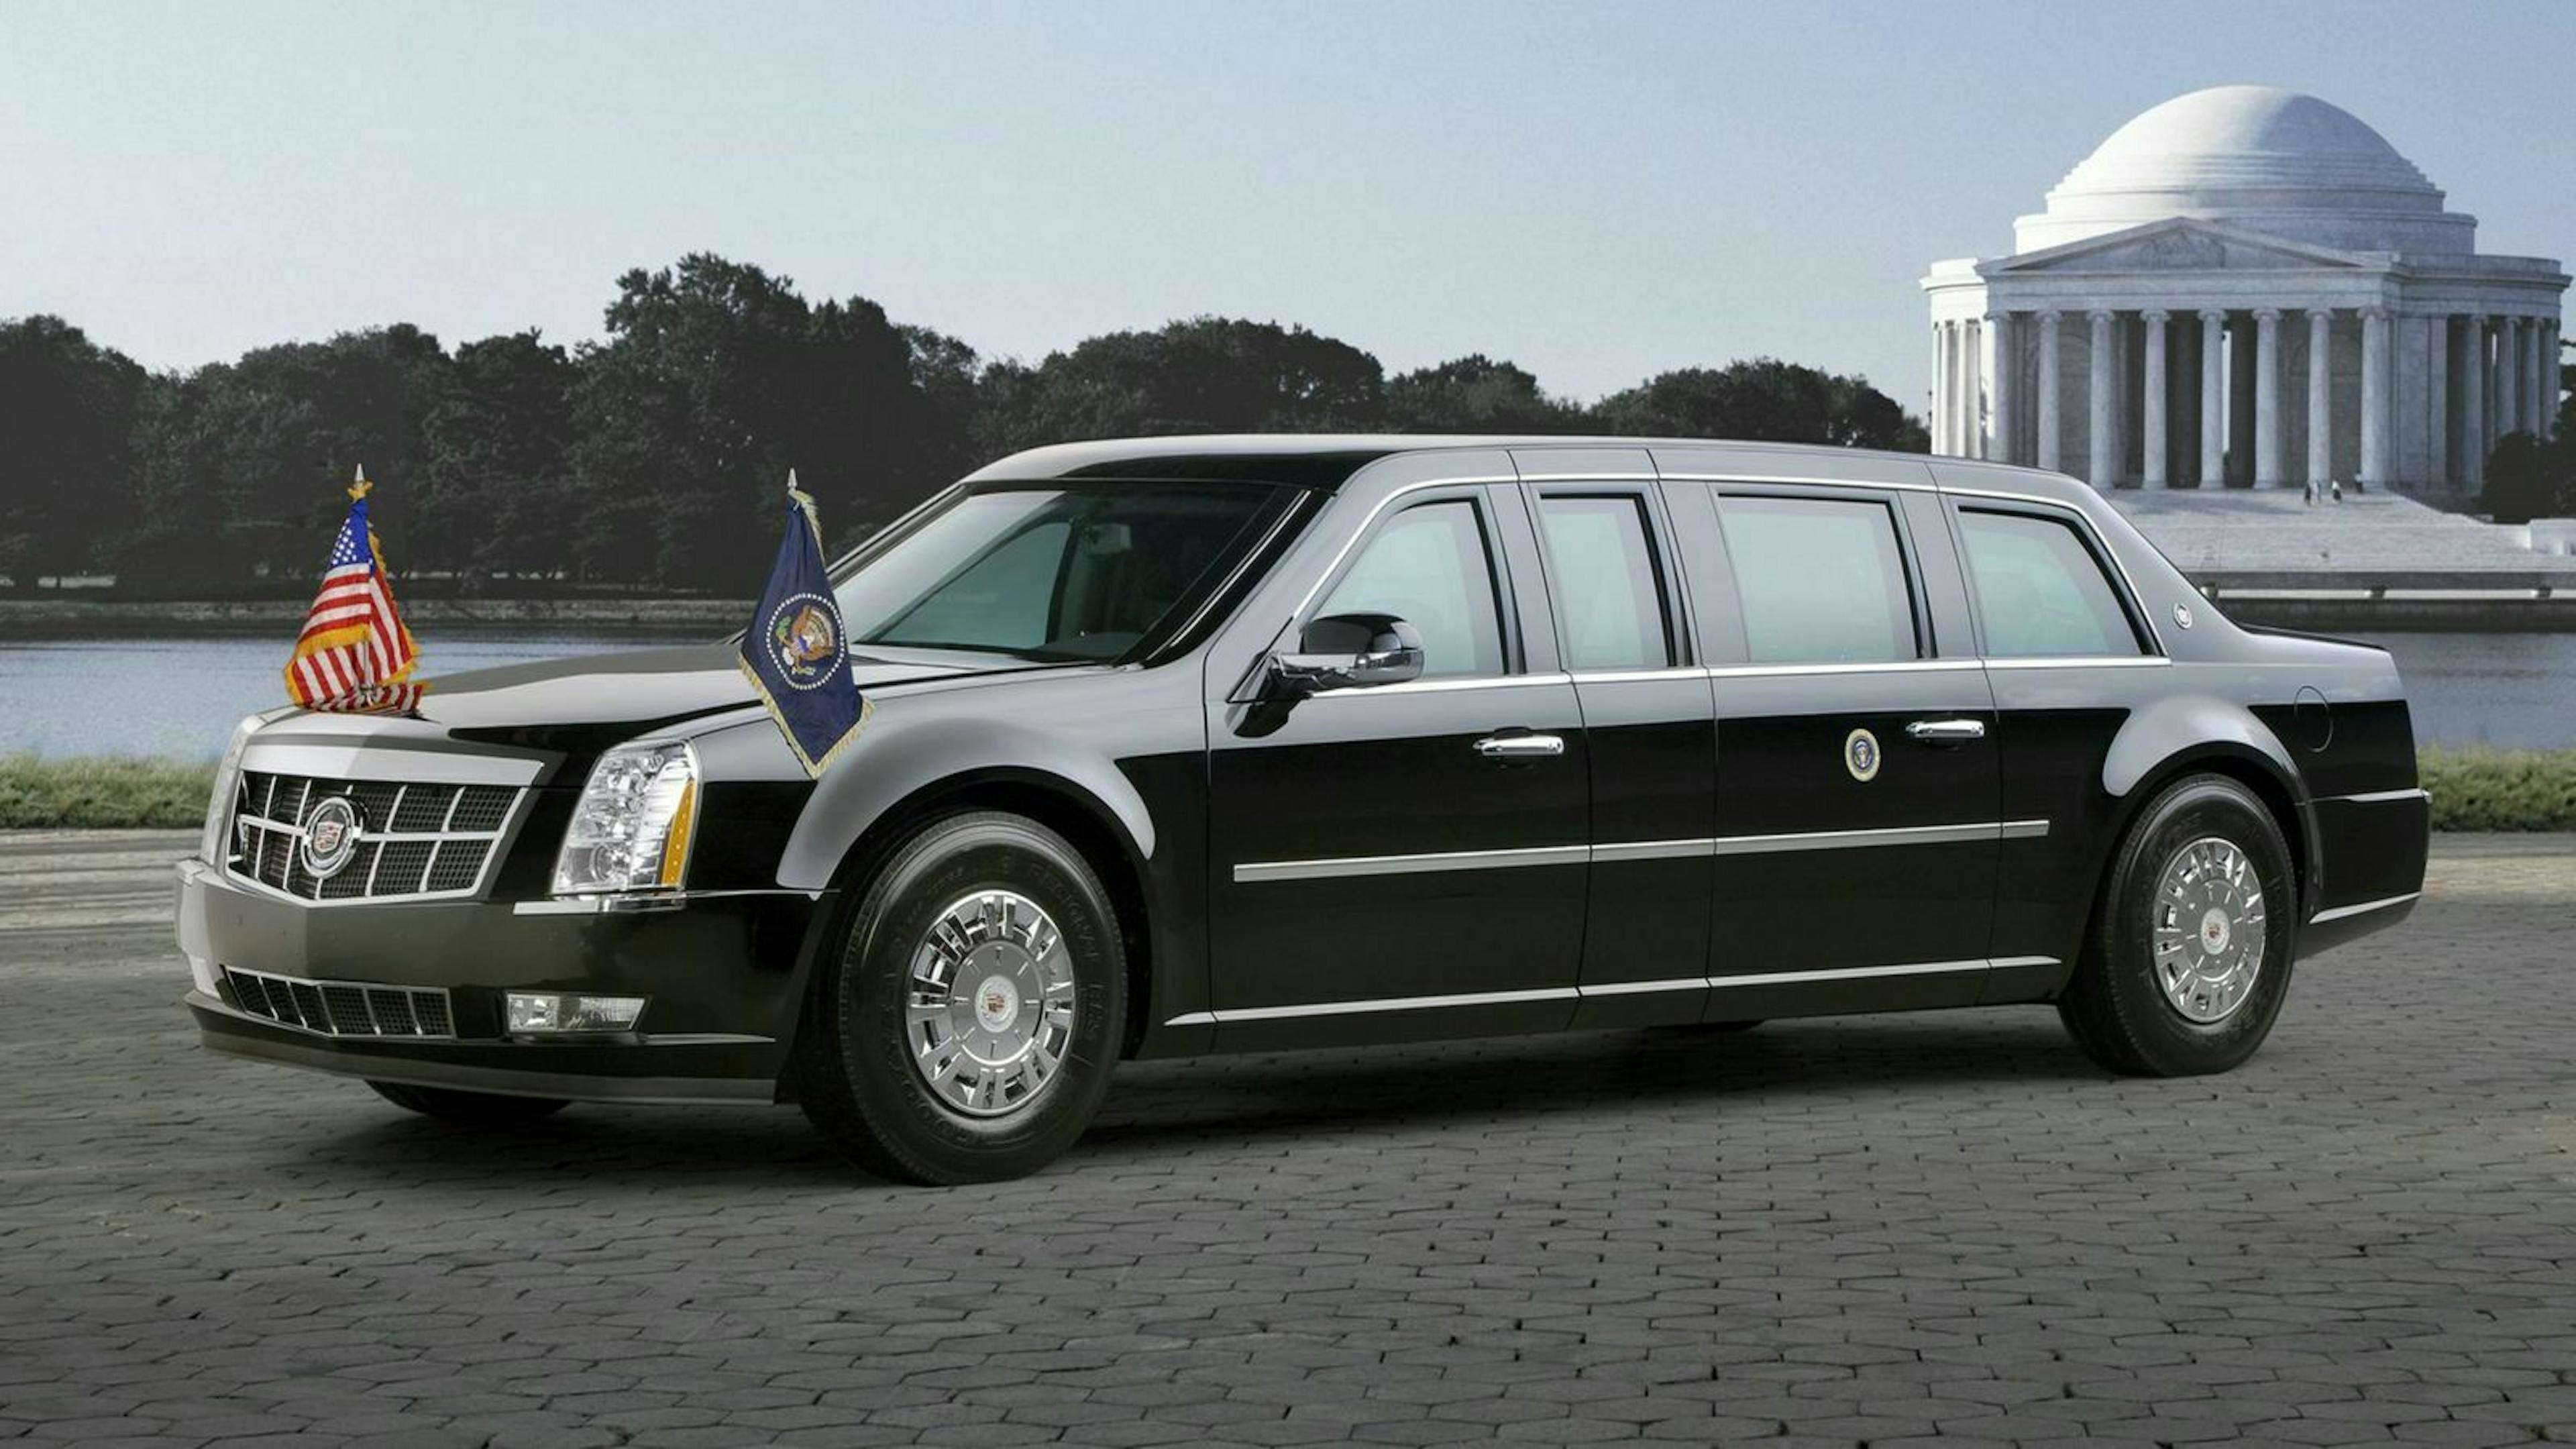 Zu sehen ist die Cadillac Limo des Präsidenten Obama